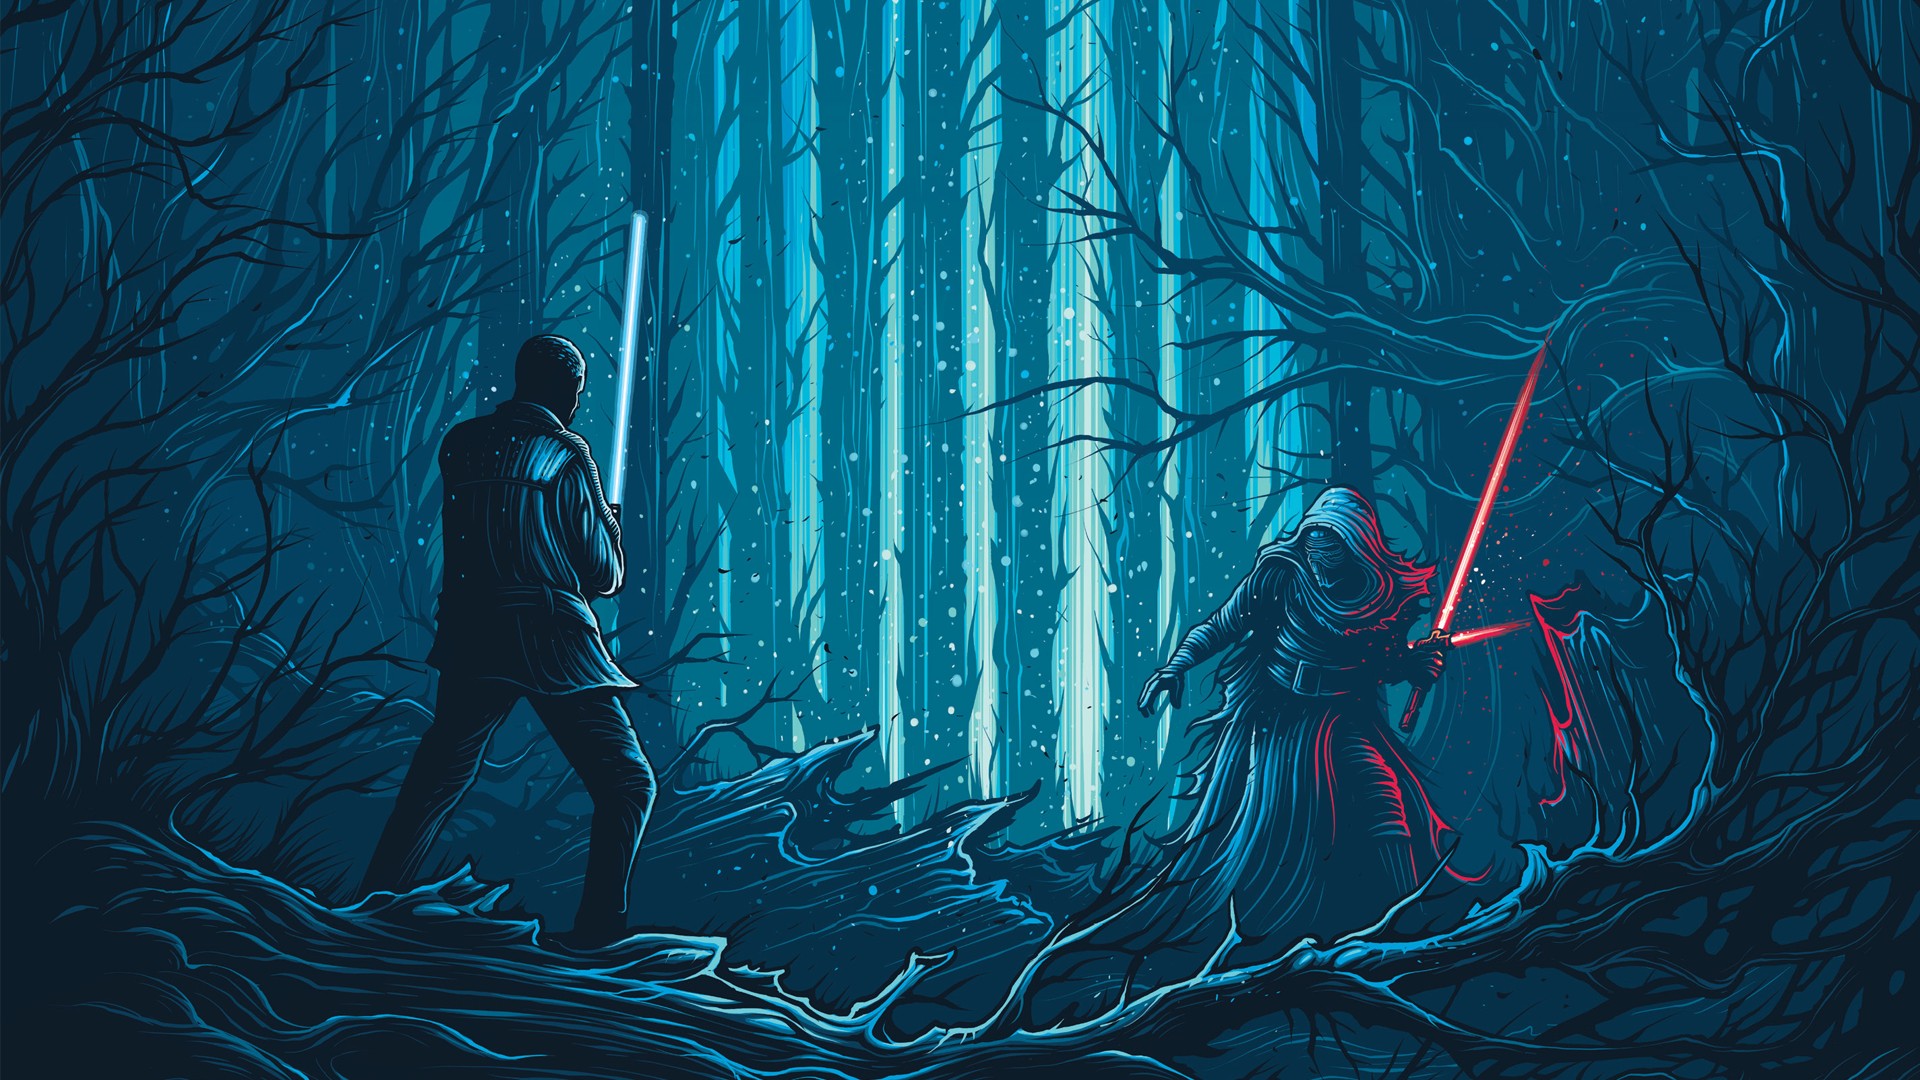 Dan Mumford, Star Wars, Star Wars: The Force Awakens Wallpaper